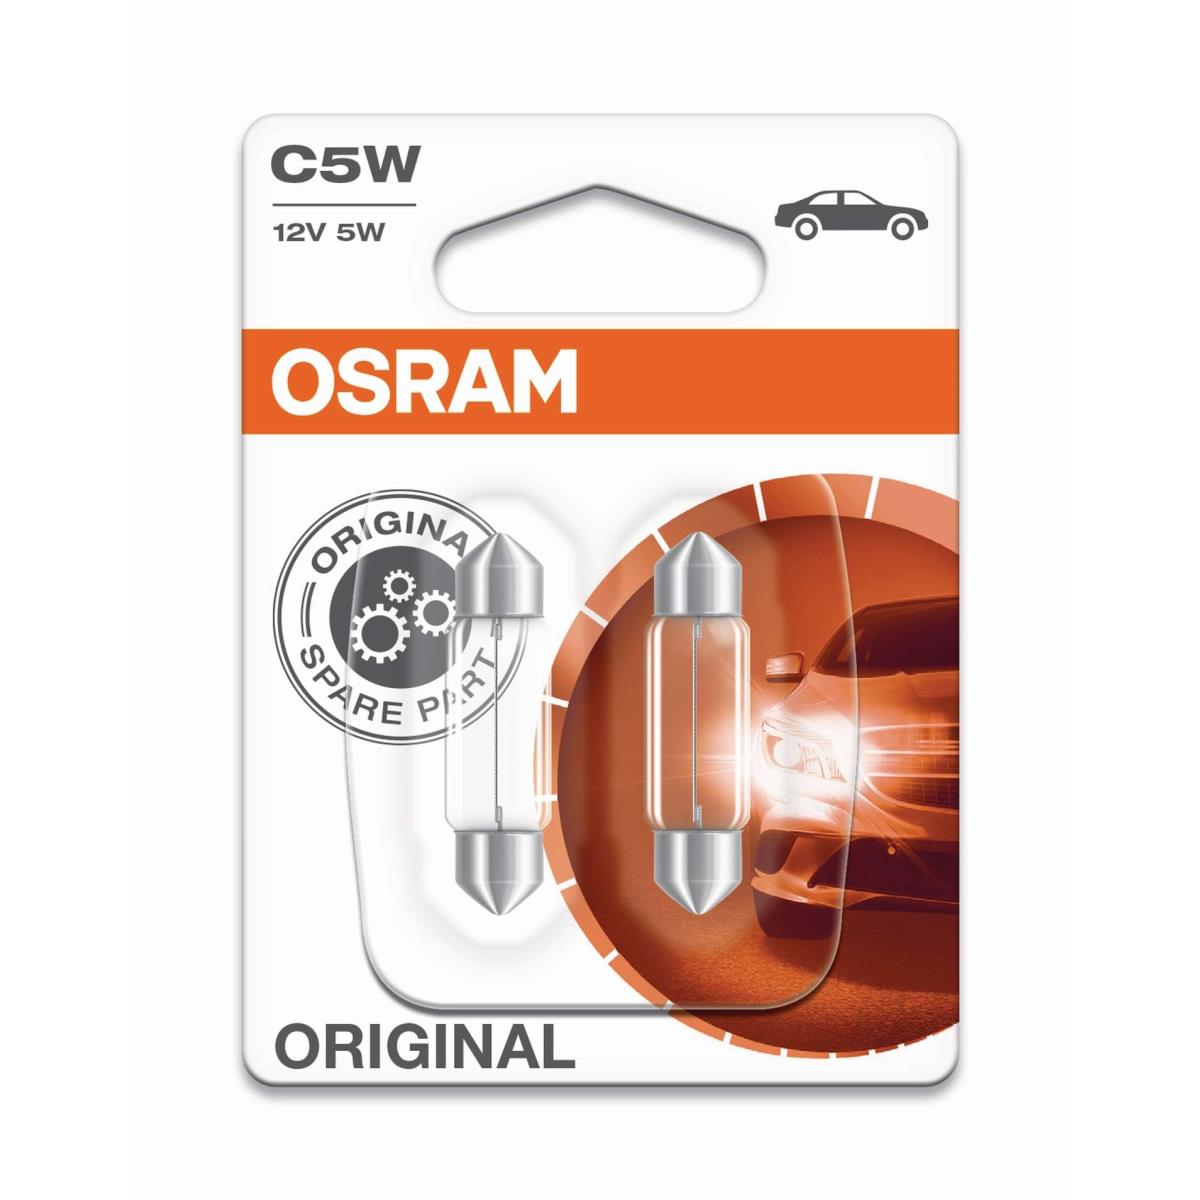 OSRAM C5W Soffittenlampen 12V/5W Sockel SV85-8 B3/Tc 1000h/2000h